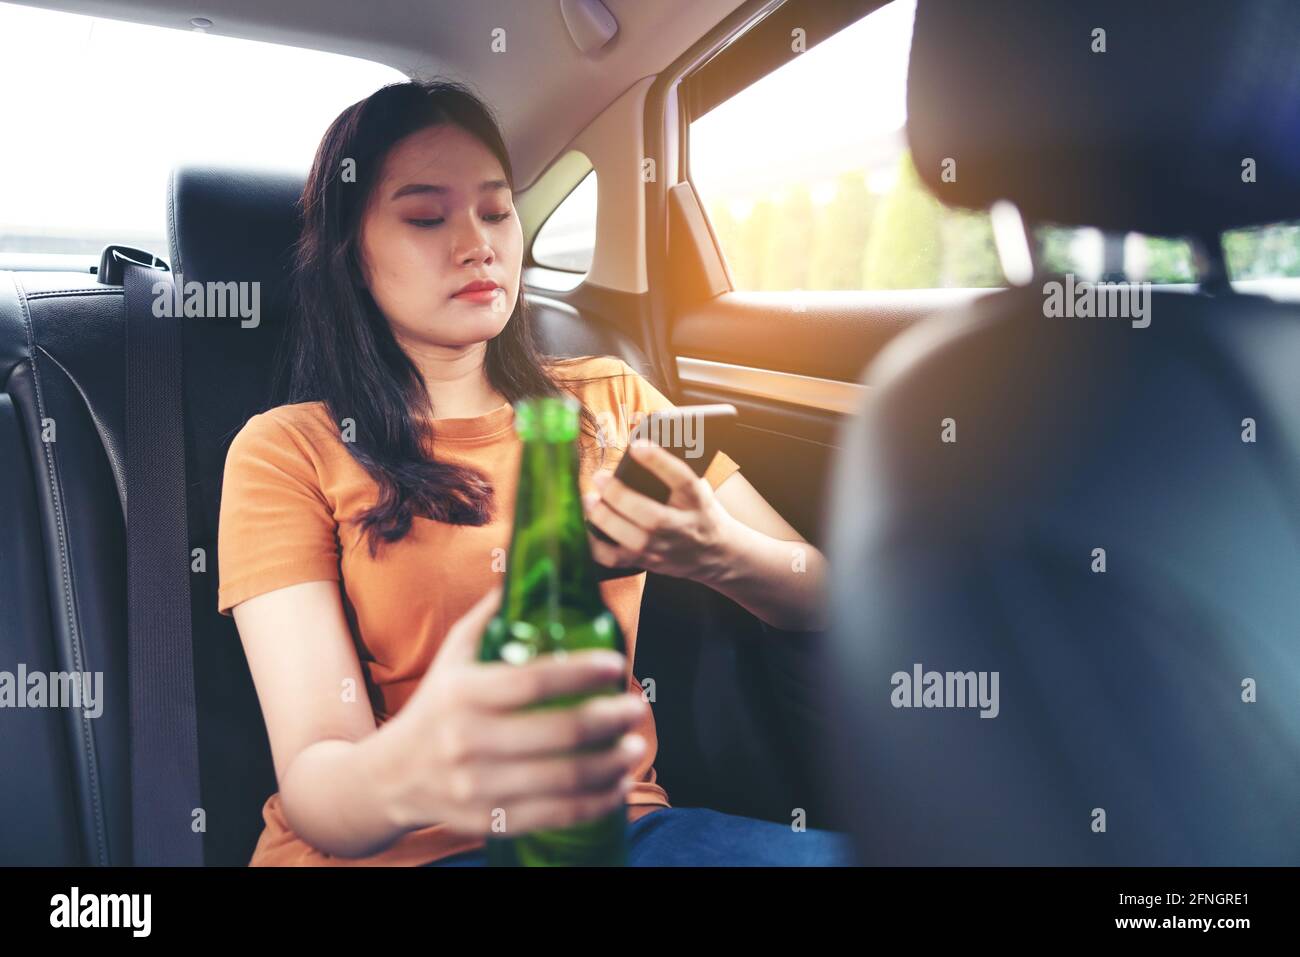 Boire une bière à la bouteille dans la voiture, filles boire de l'alcool Banque D'Images